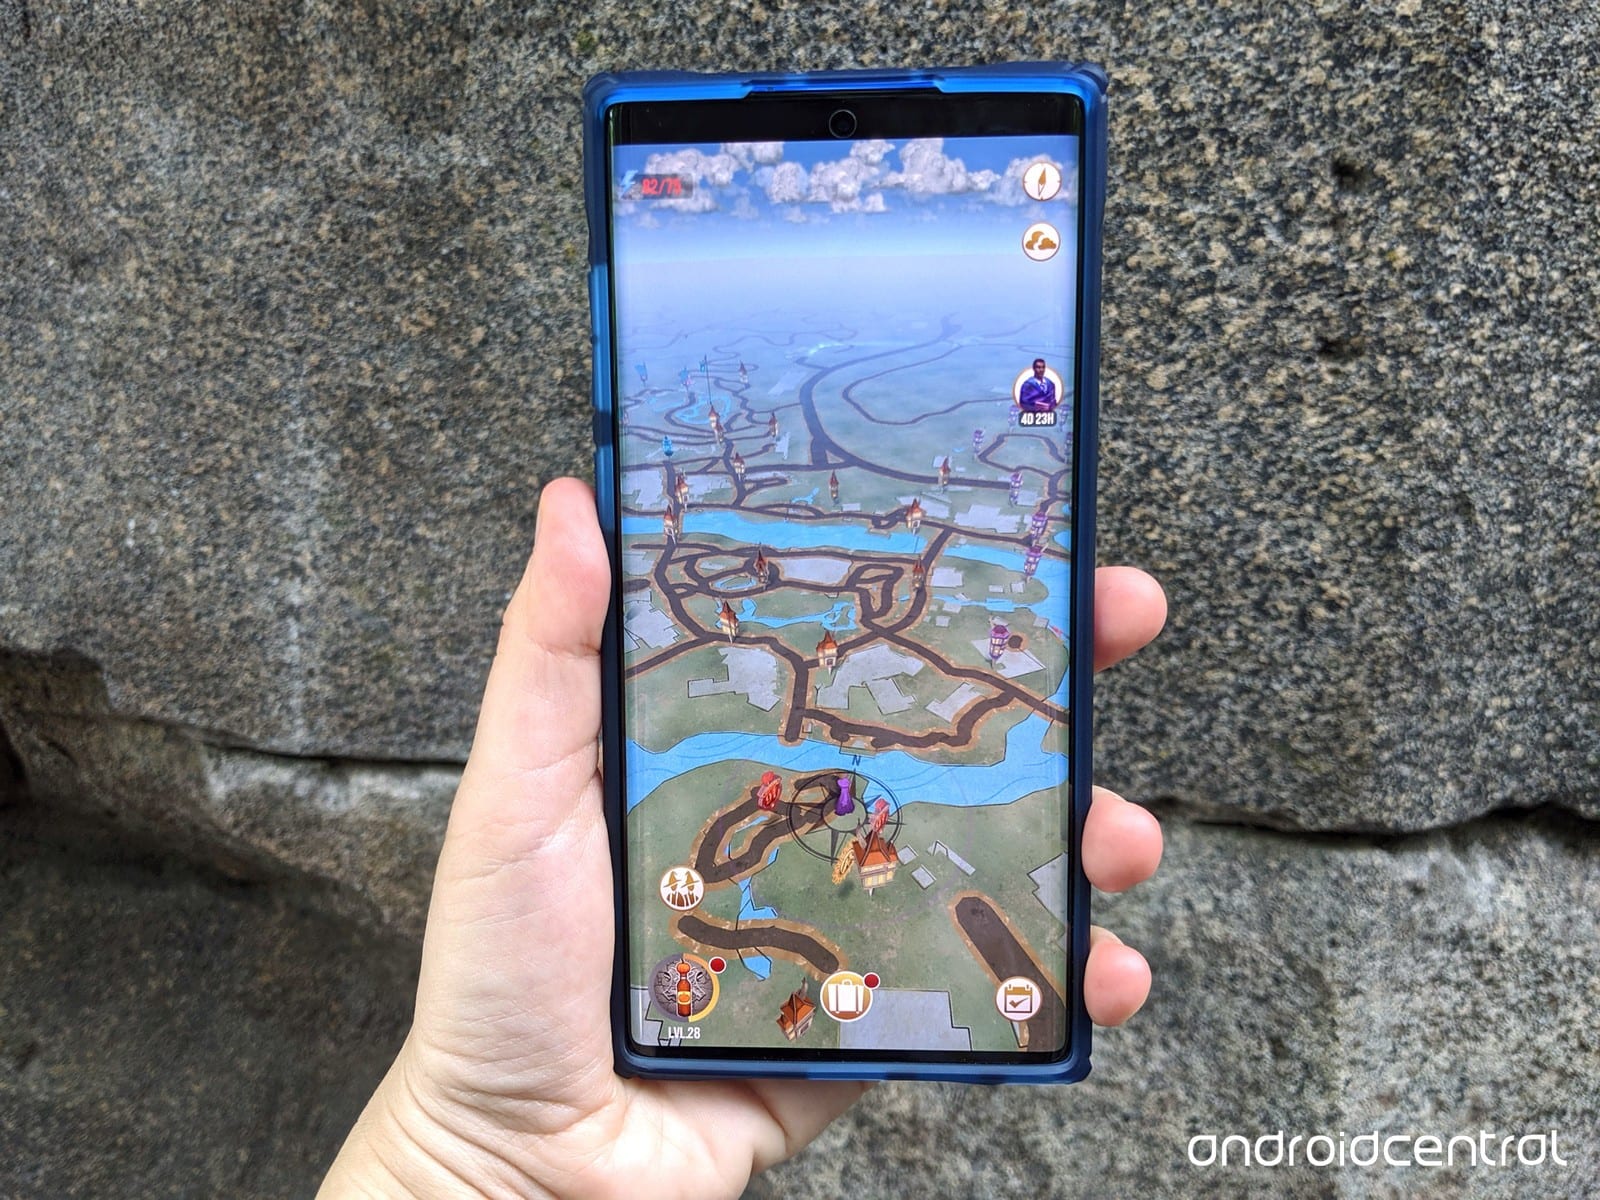 Recenzja etui Ringke Fusion-X dla Samsunga Galaxy Note 10+: Przezroczysty case, które nie boi się wyzwań